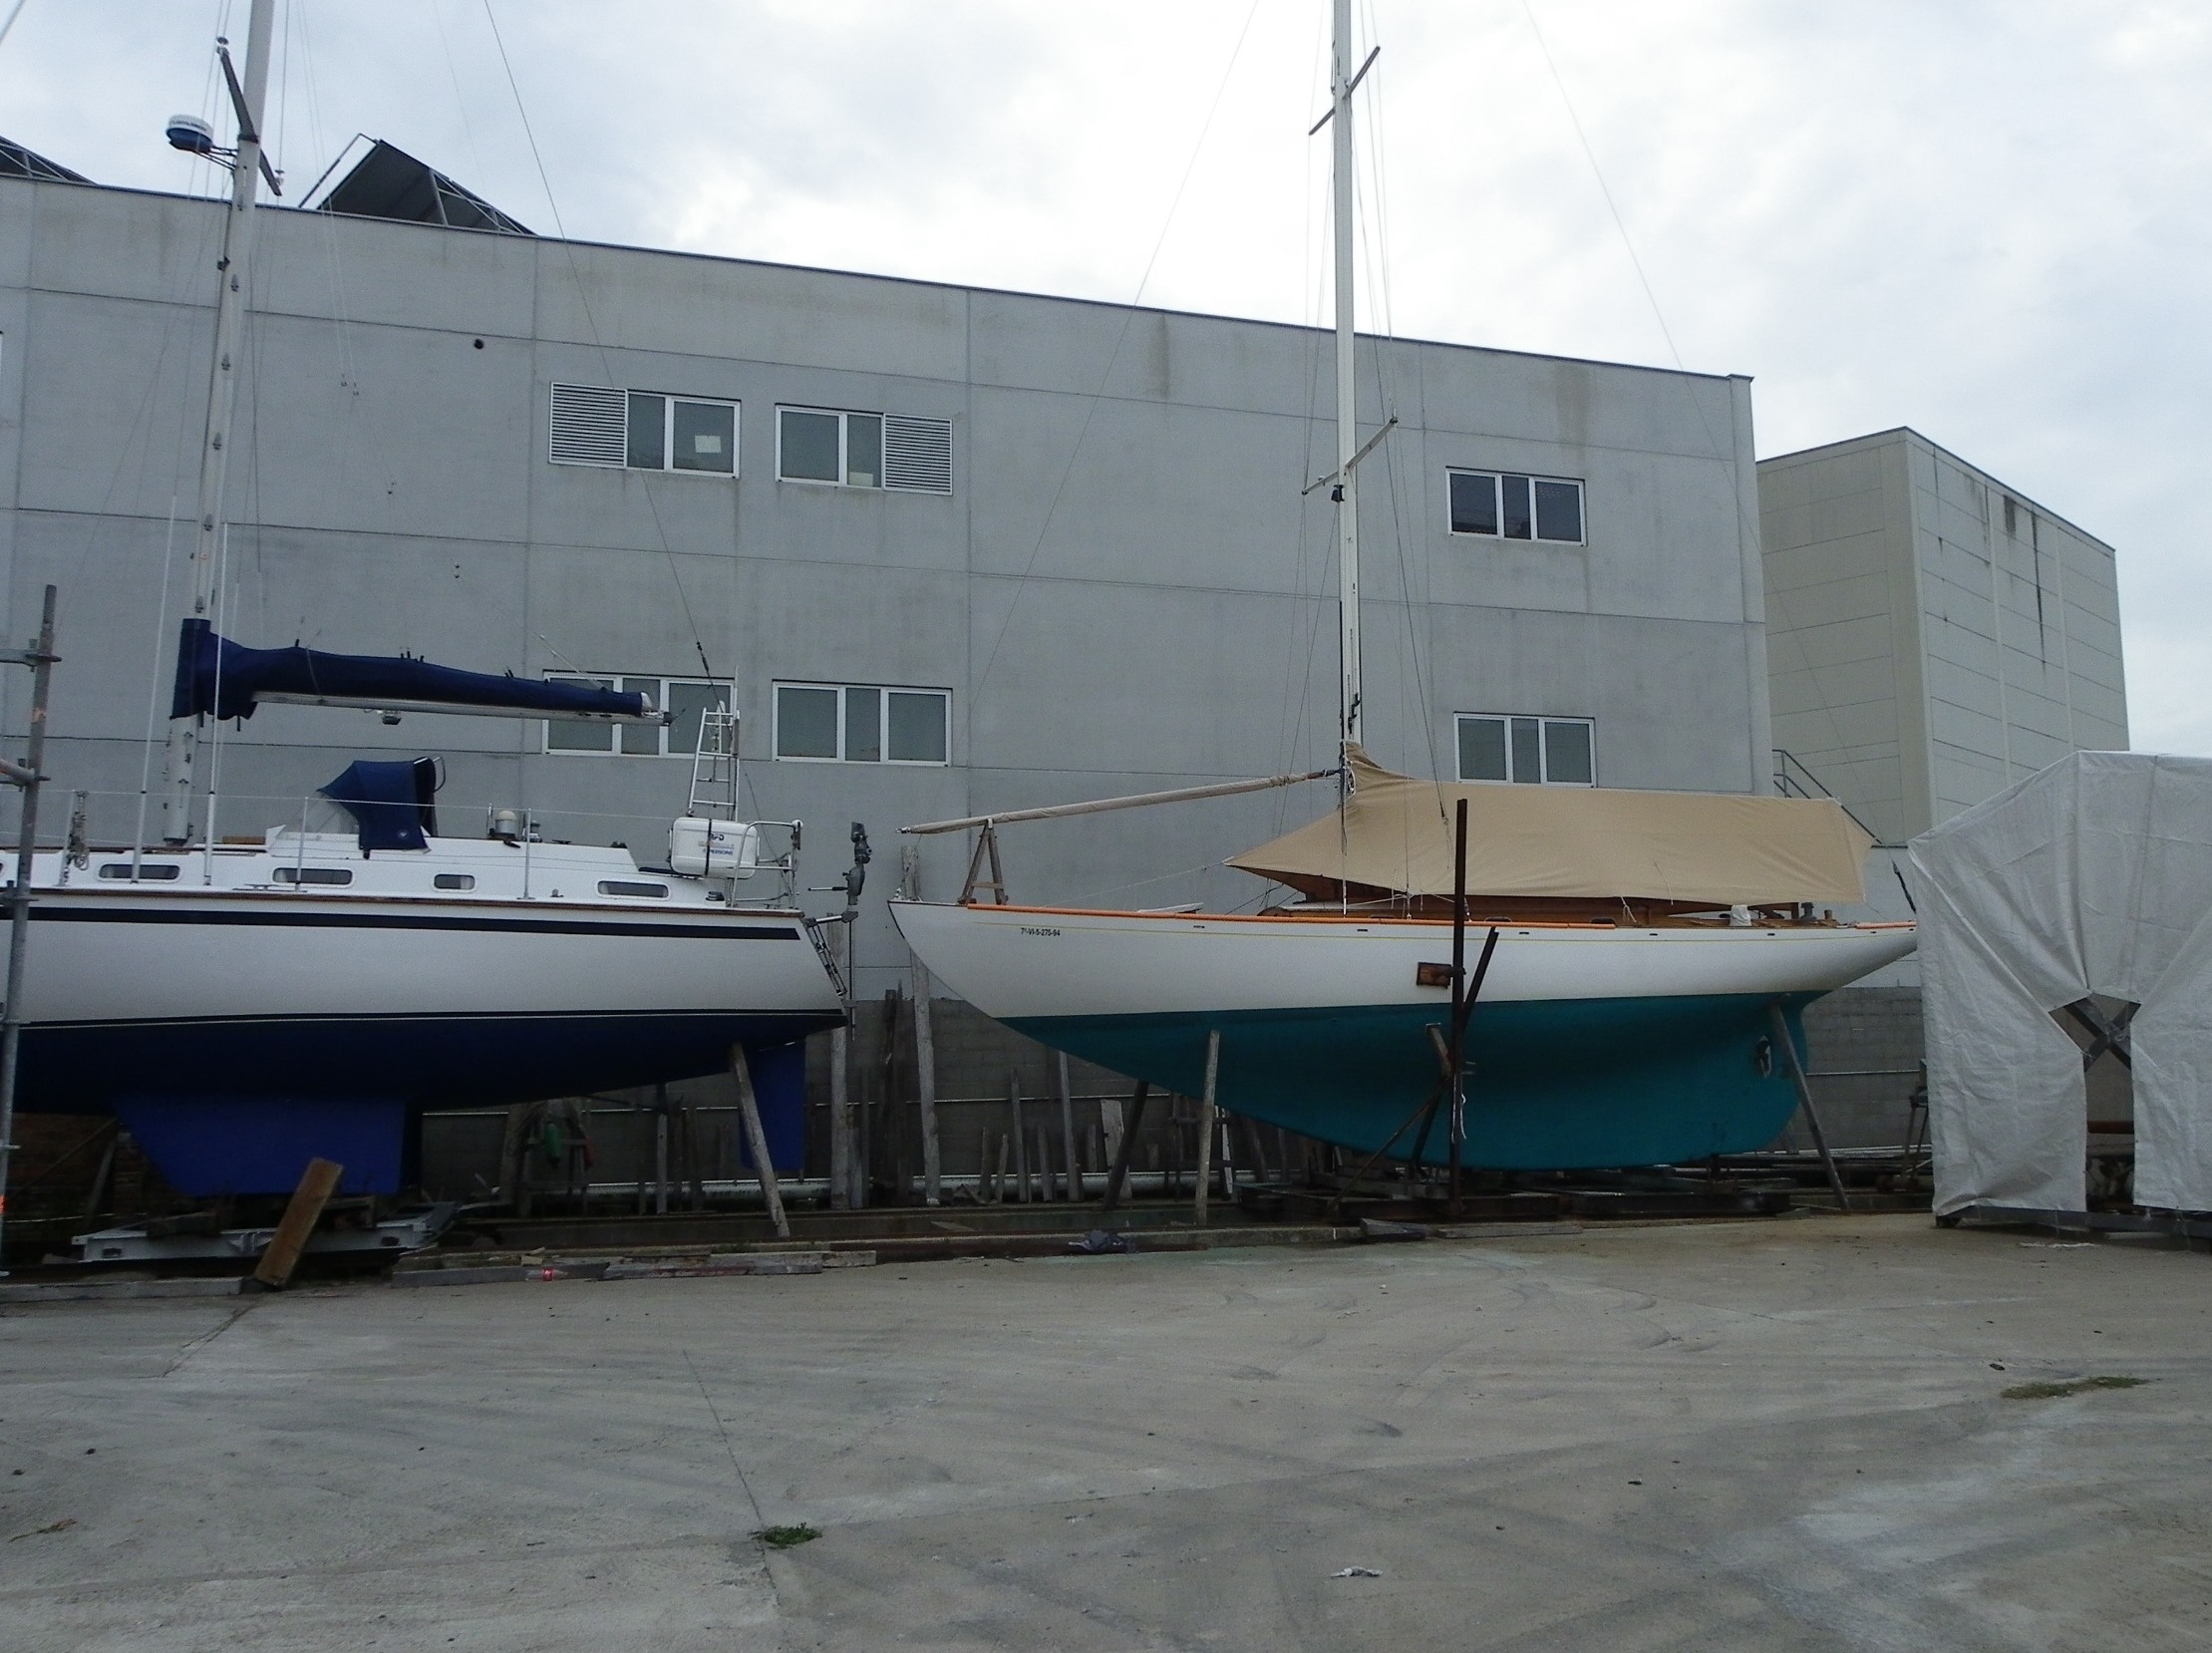 Varada del PINGUINO y el PAPAGENO en Astilleros Lagos